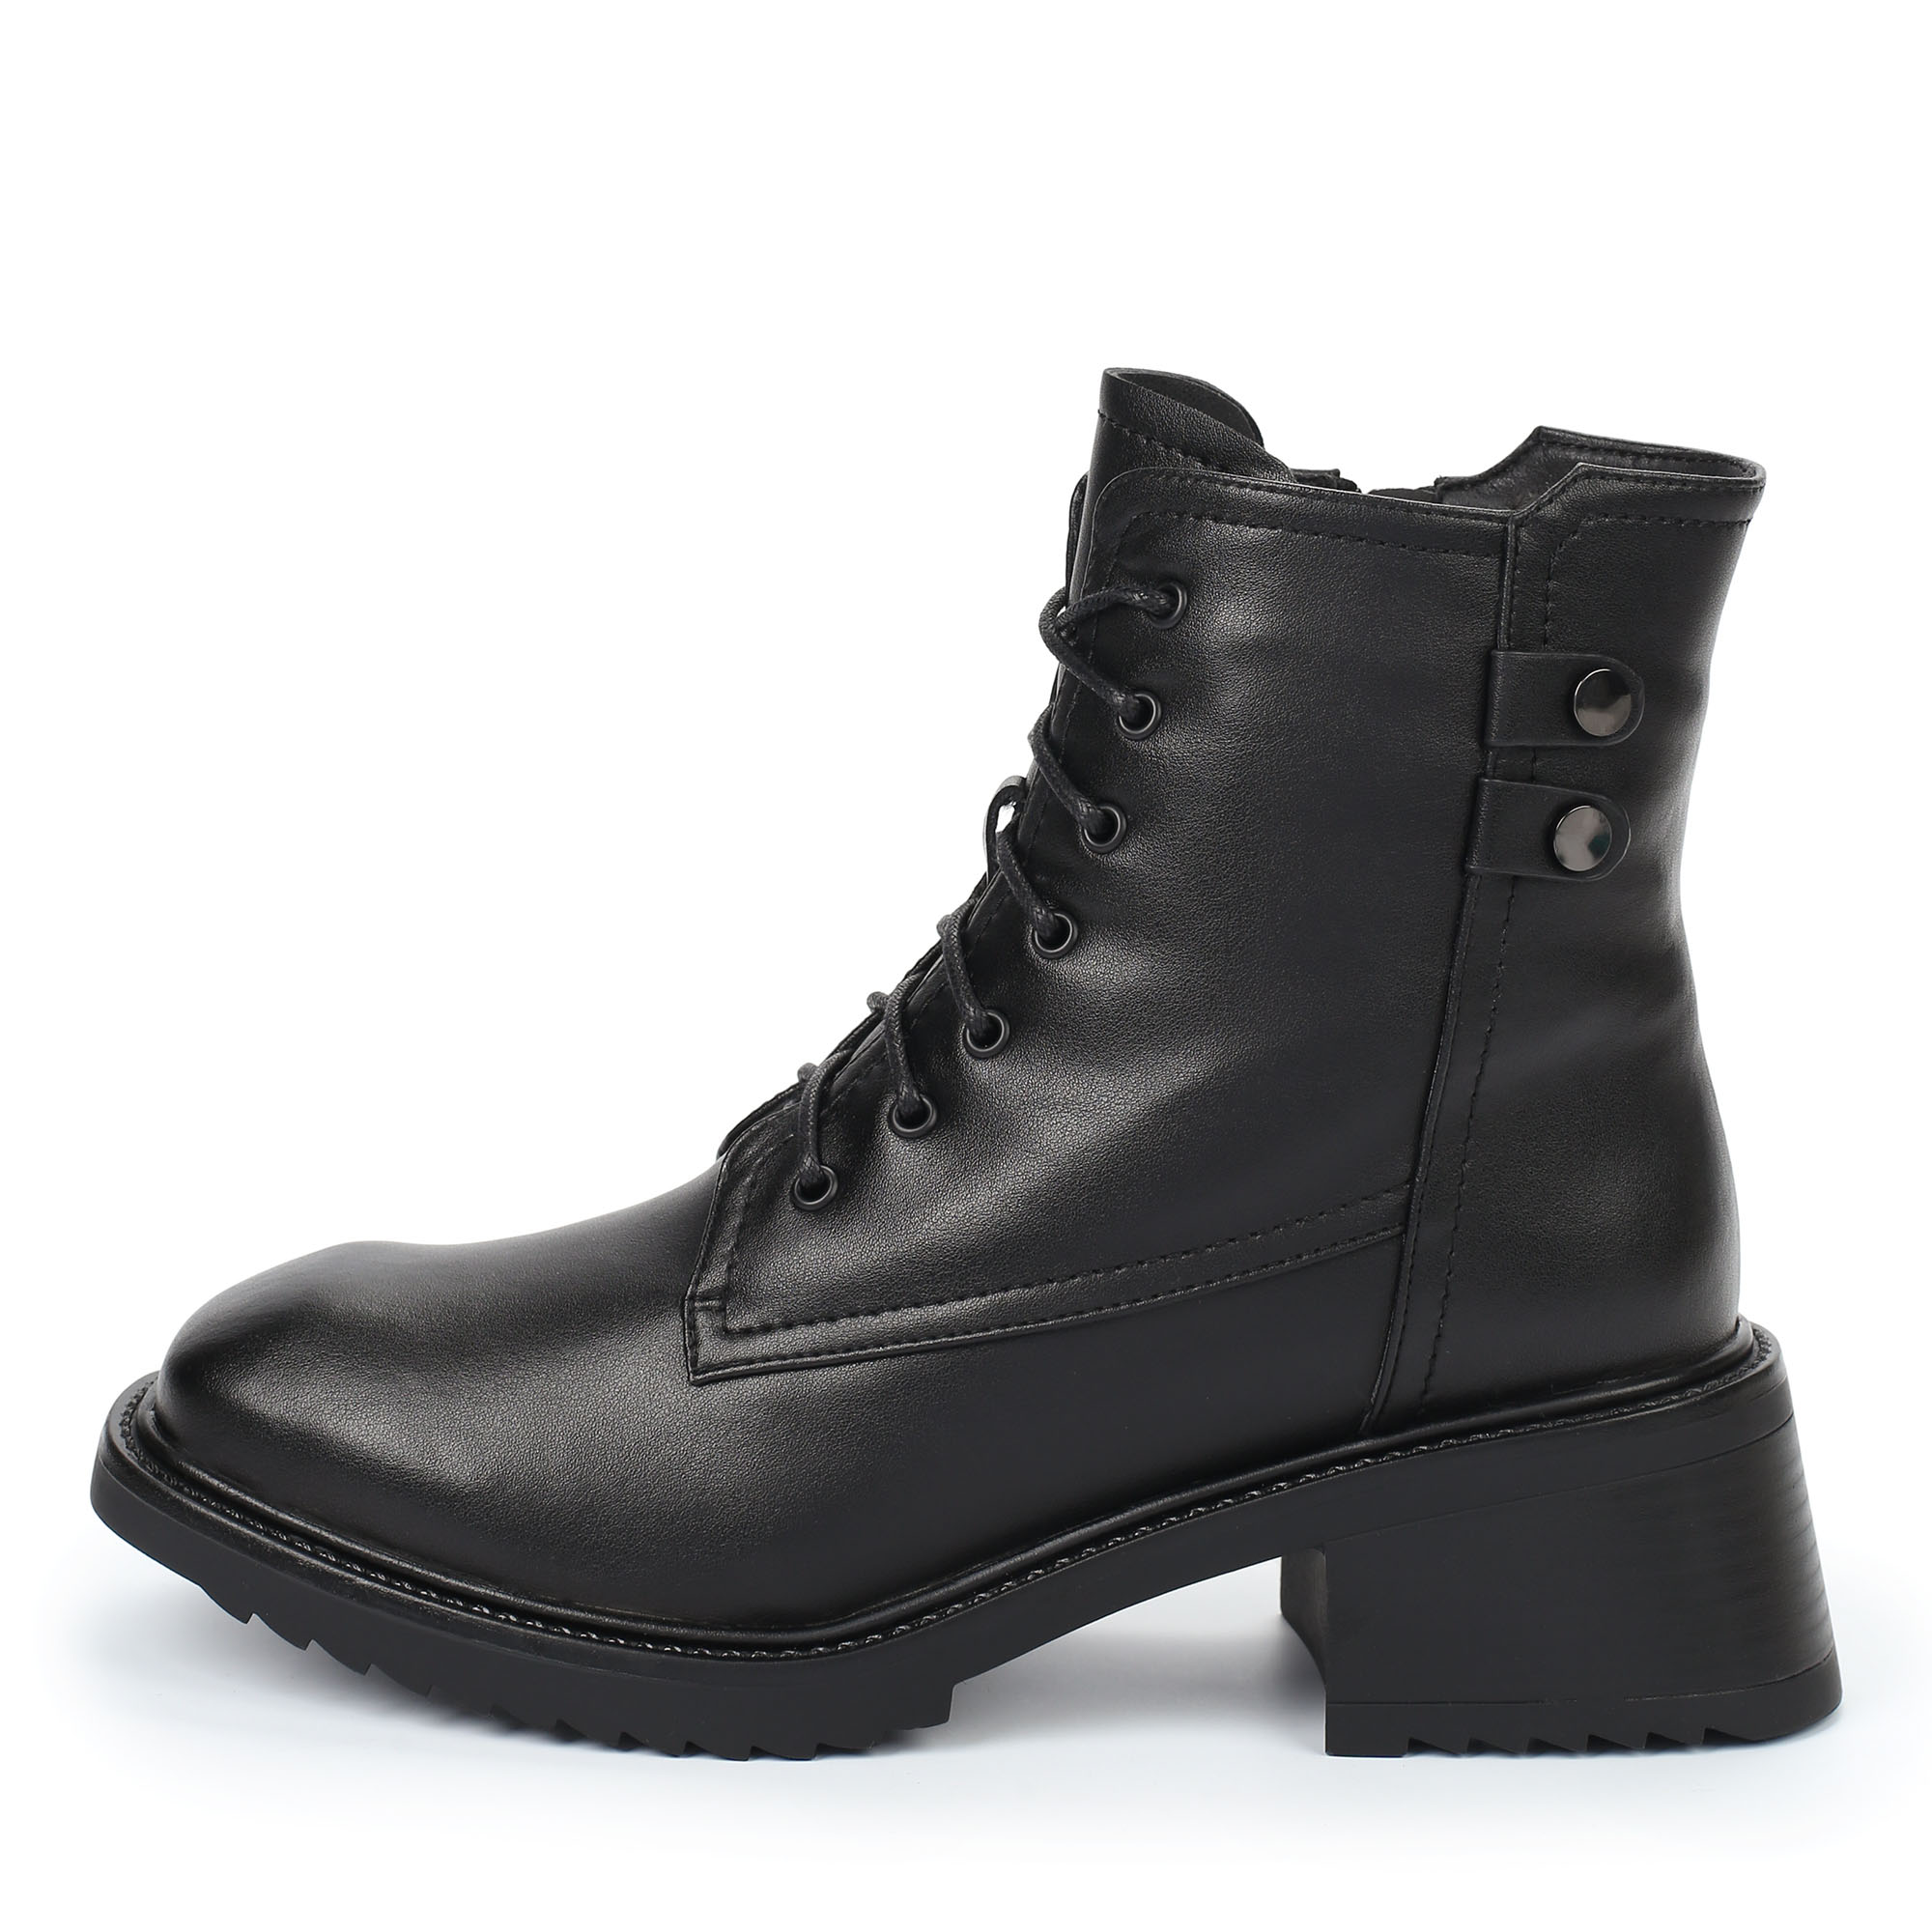 Ботинки Thomas Munz 102-202A-5602, цвет черный, размер 38 - фото 1